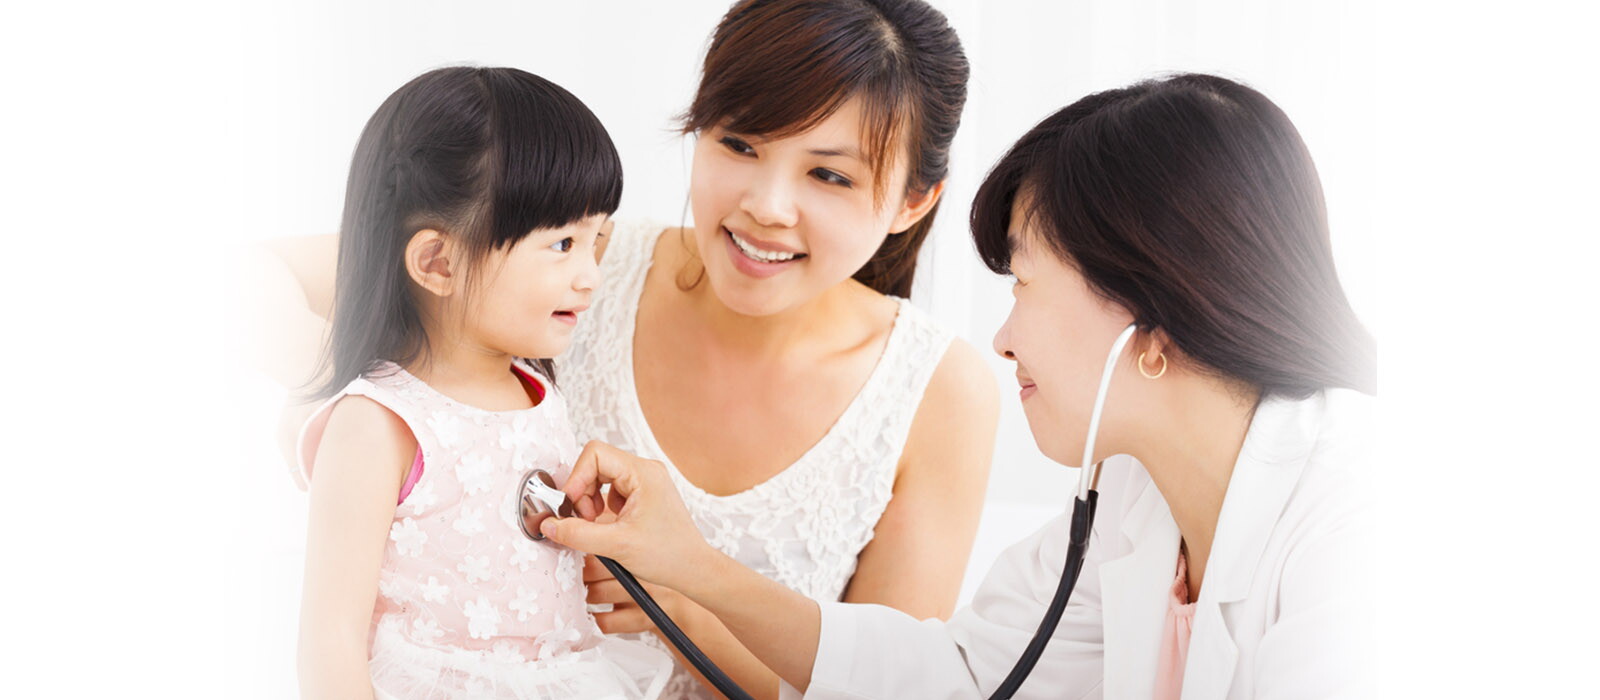 Ciri-ciri Anak Sehat Menurut Ikatan Dokter Anak Indonesia